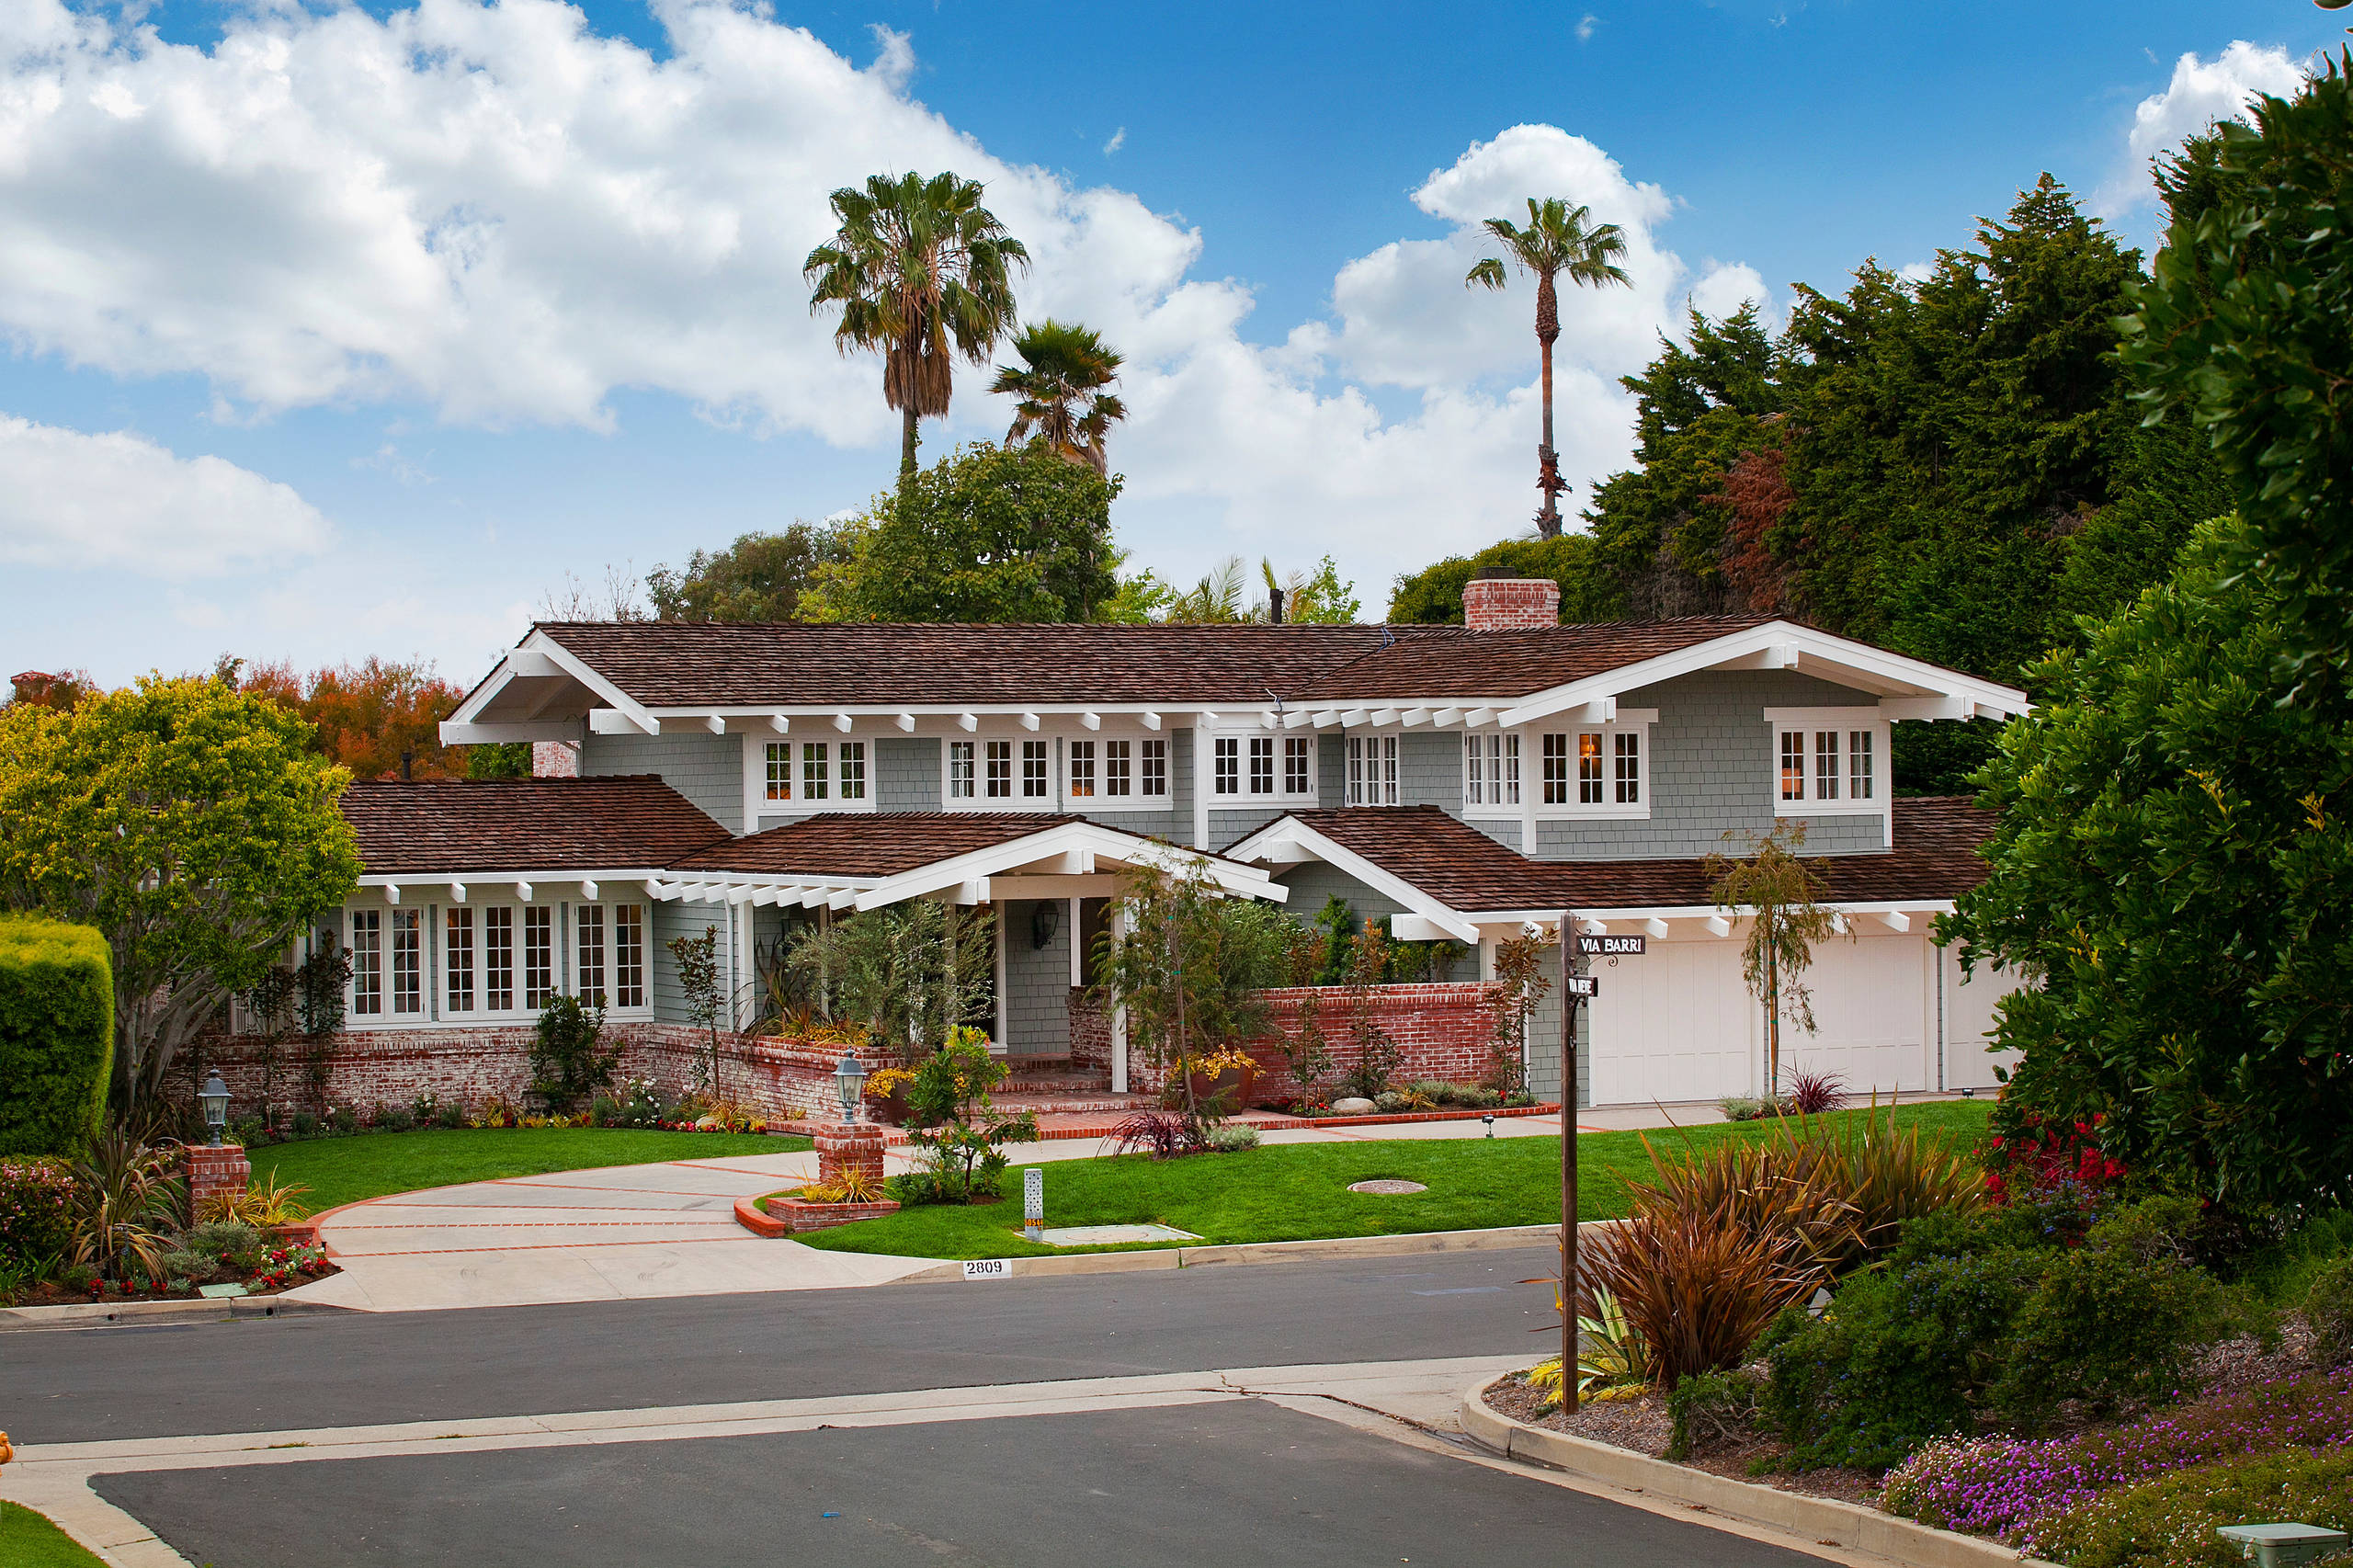 Transformed Home in Palos Verdes Estates, CA